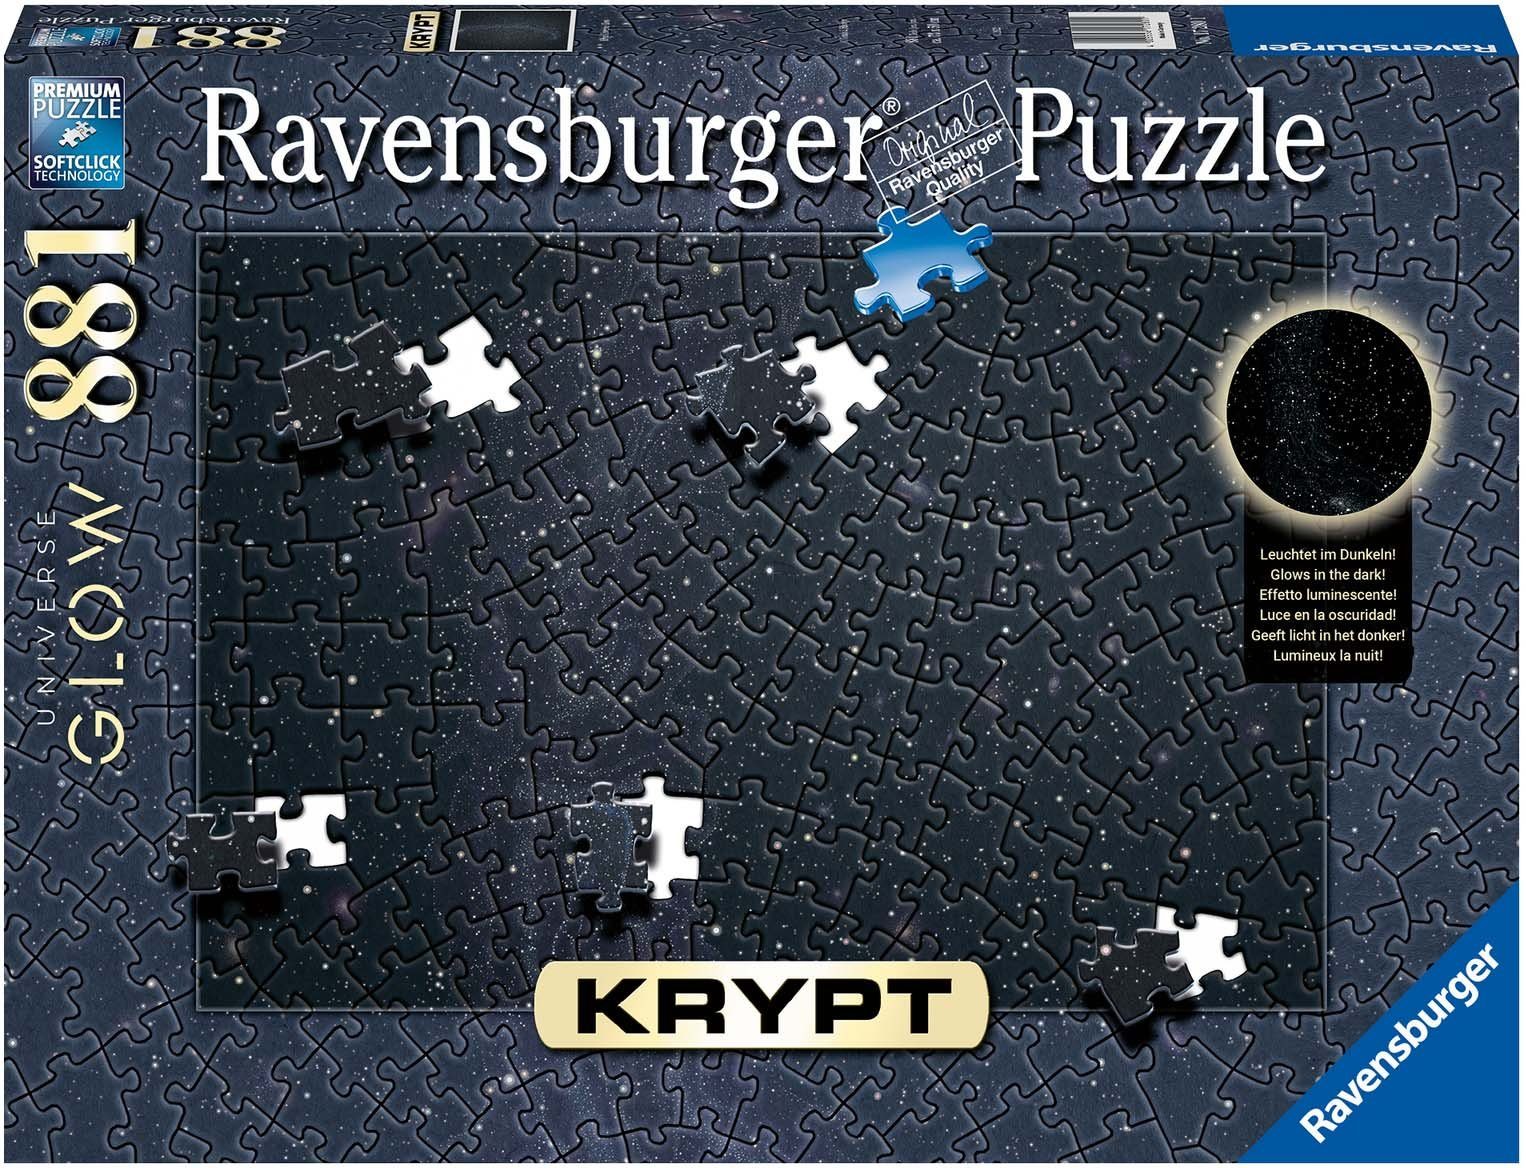 Universe schützt Ravensburger - 881 in Puzzle Puzzleteile, Glow, Krypt - Made Germany, weltweit Wald FSC®